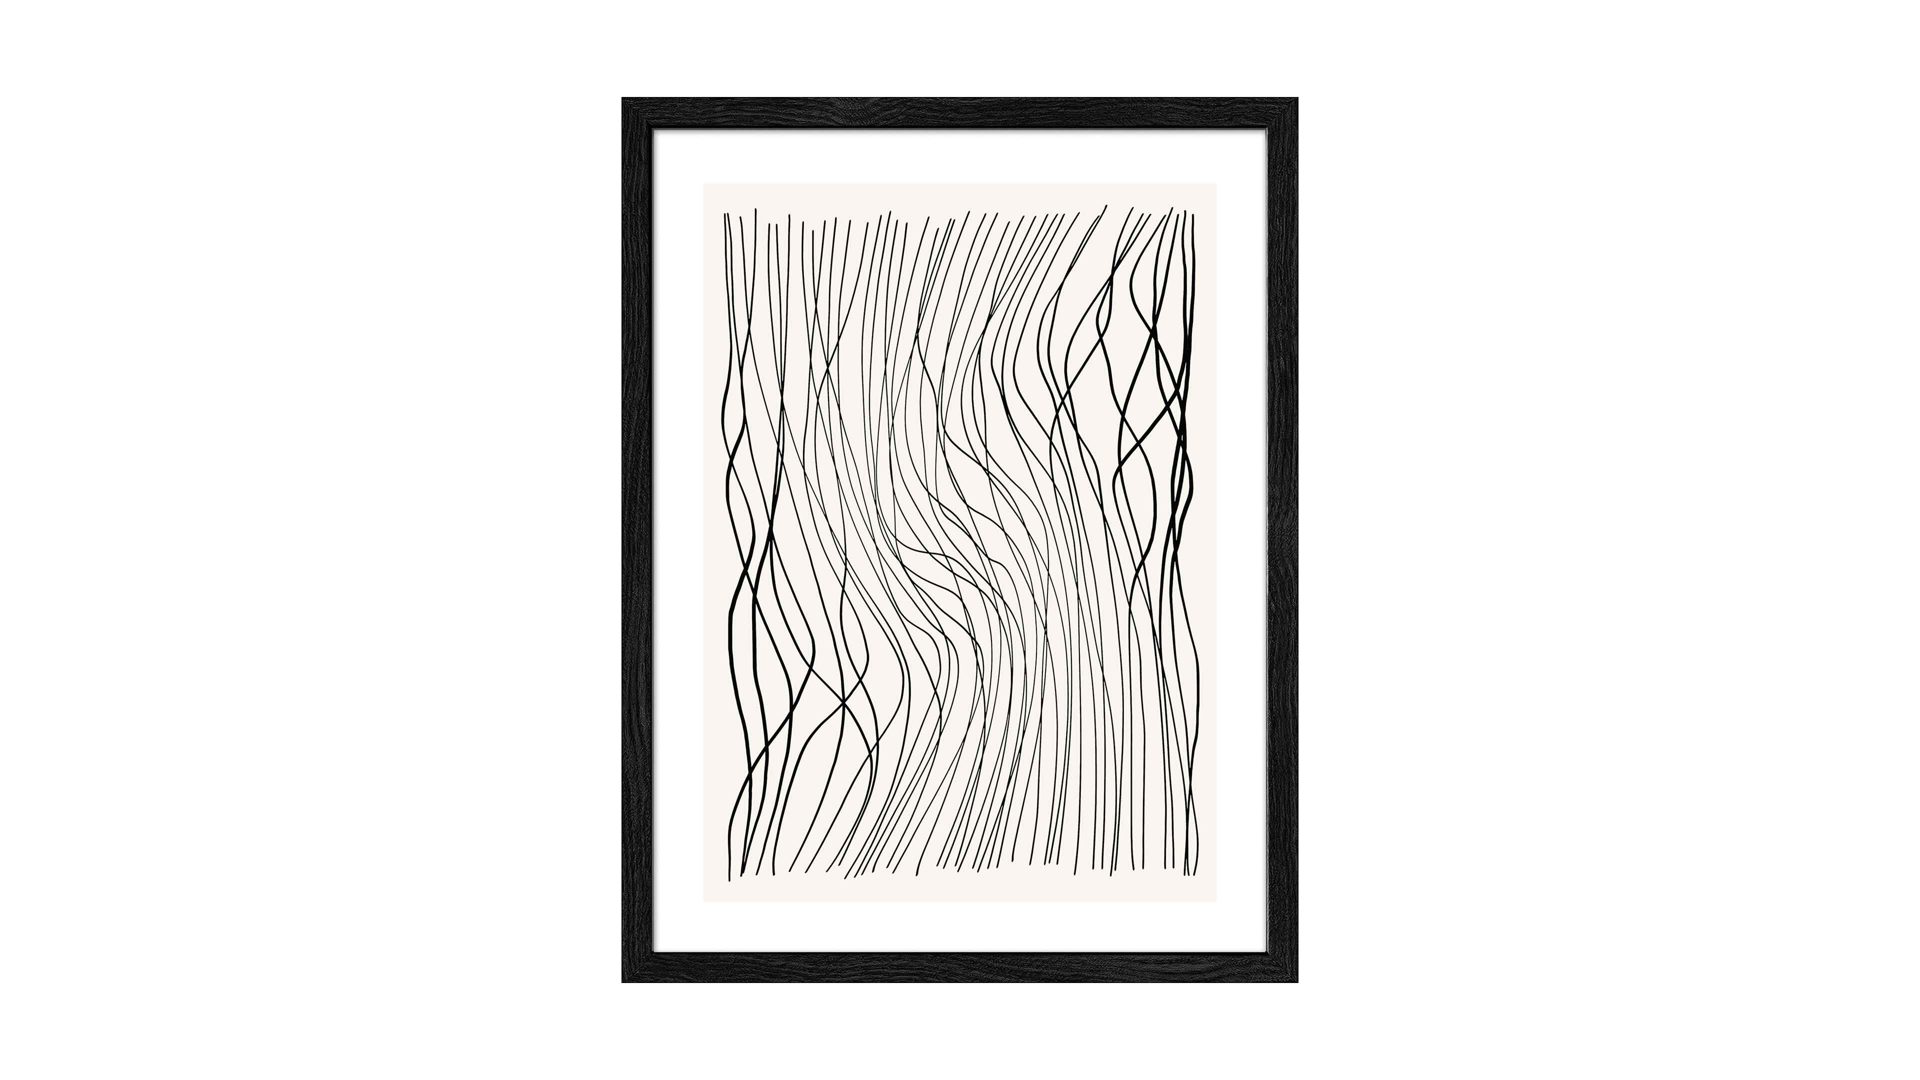 Kunstdruck Pro®art bilderpalette aus Karton / Papier / Pappe in Schwarz PRO®ART Kunstdruck Lines And Shapes XIII Schwarz & Weiß - ca. 30 x 40 cm